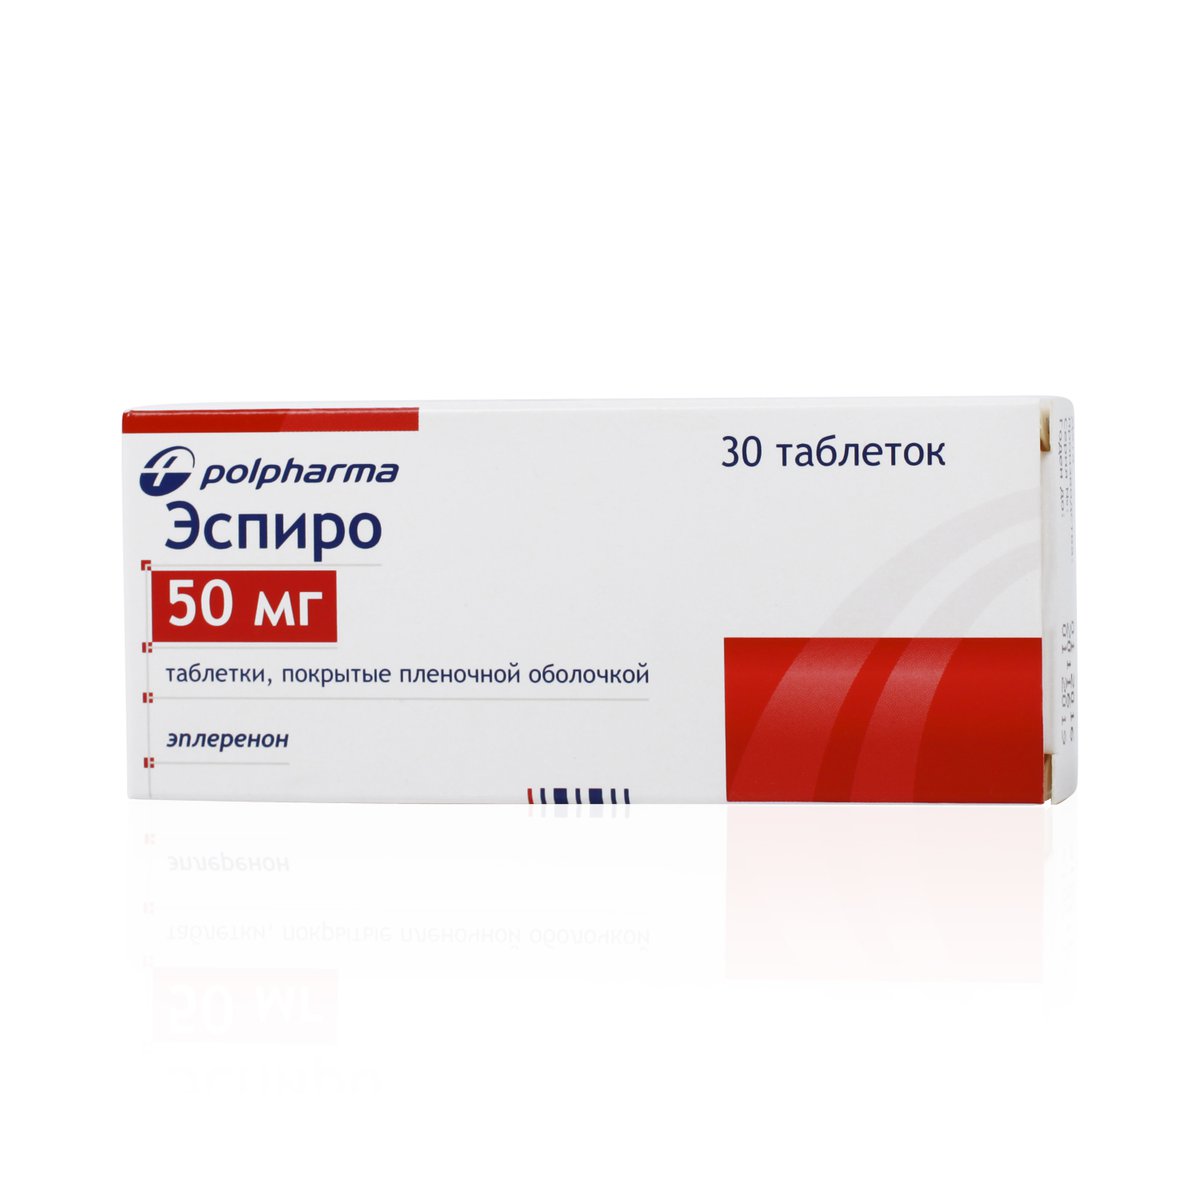 Эспиро (таблетки, 30 шт, 50 мг) - цена,  онлайн  .